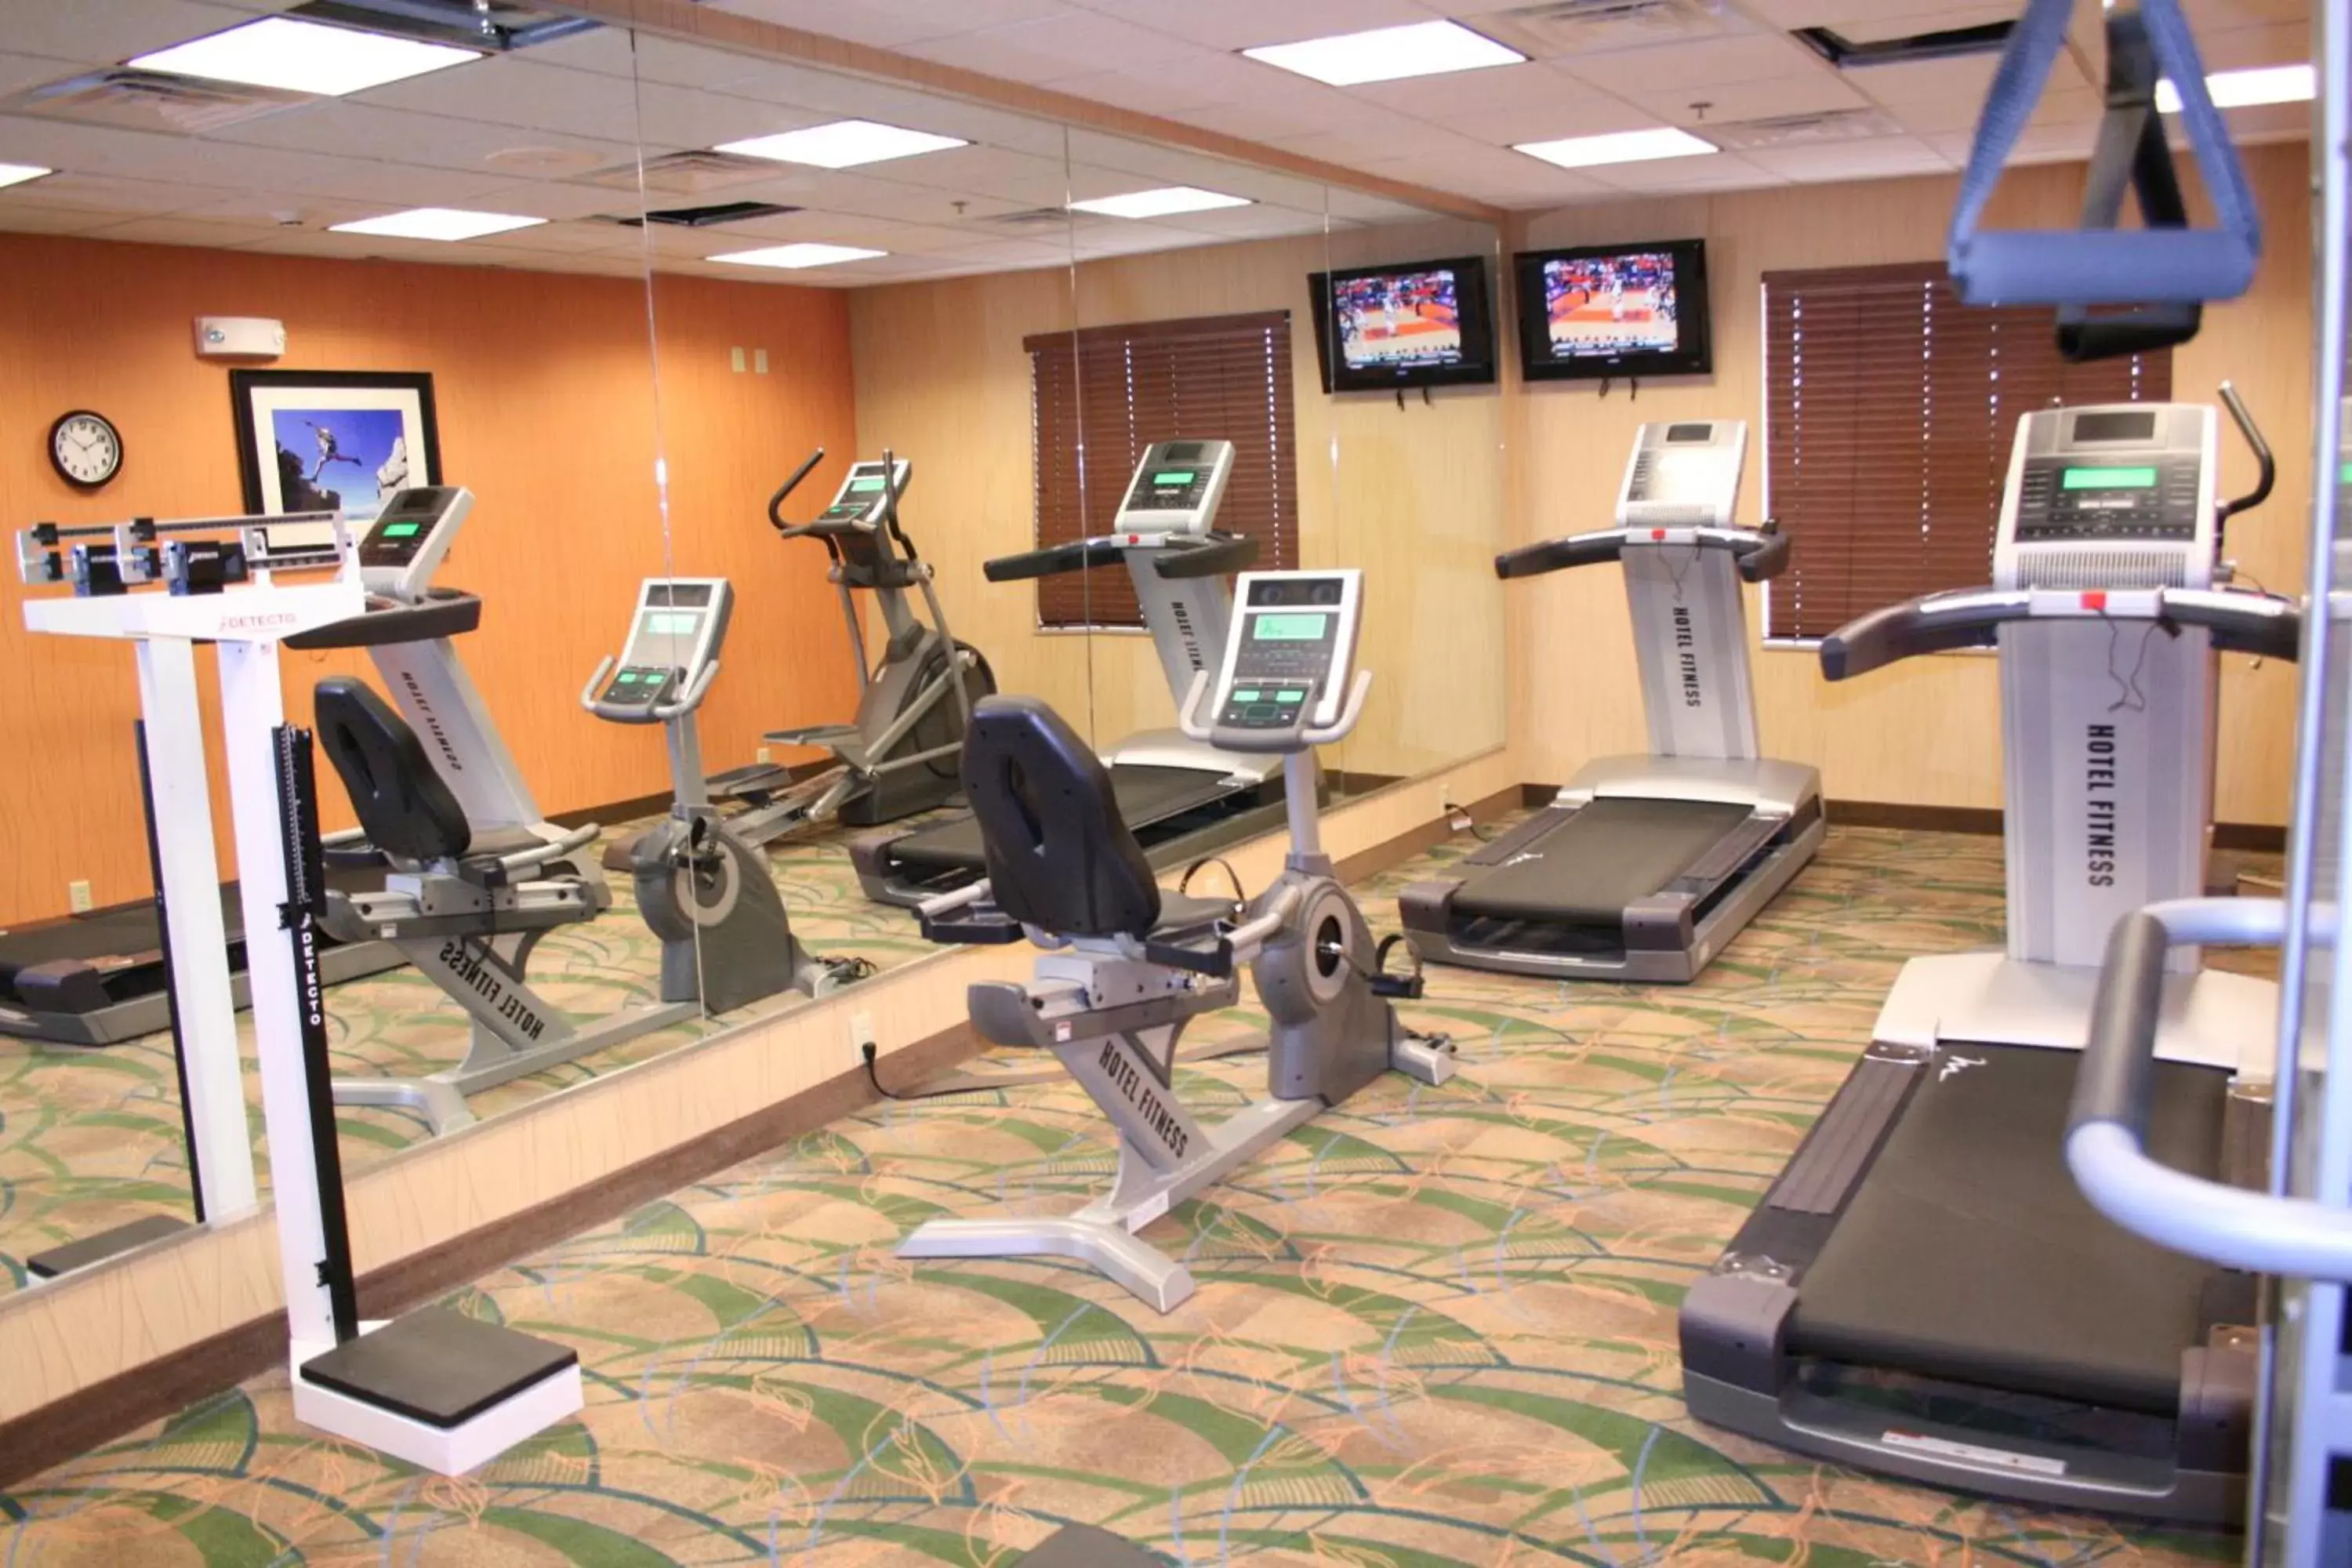 Fitness centre/facilities, Fitness Center/Facilities in Holiday Inn Express Pratt, an IHG Hotel